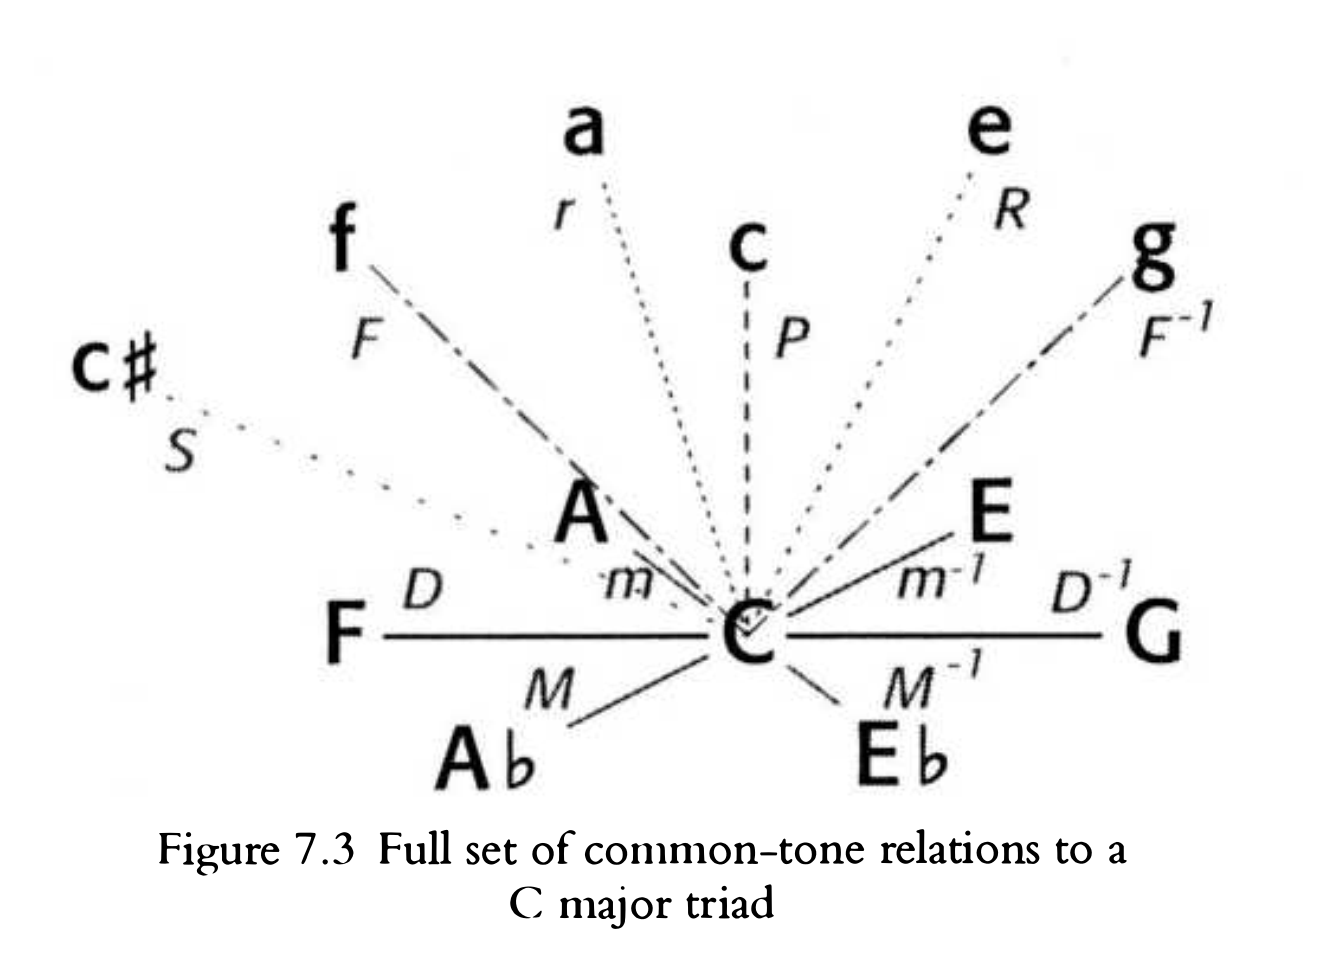 Koppの変形操作の例。C→A♭はM、CからFmは小文字のf、C→GはDのマイナス1乗などとなる。